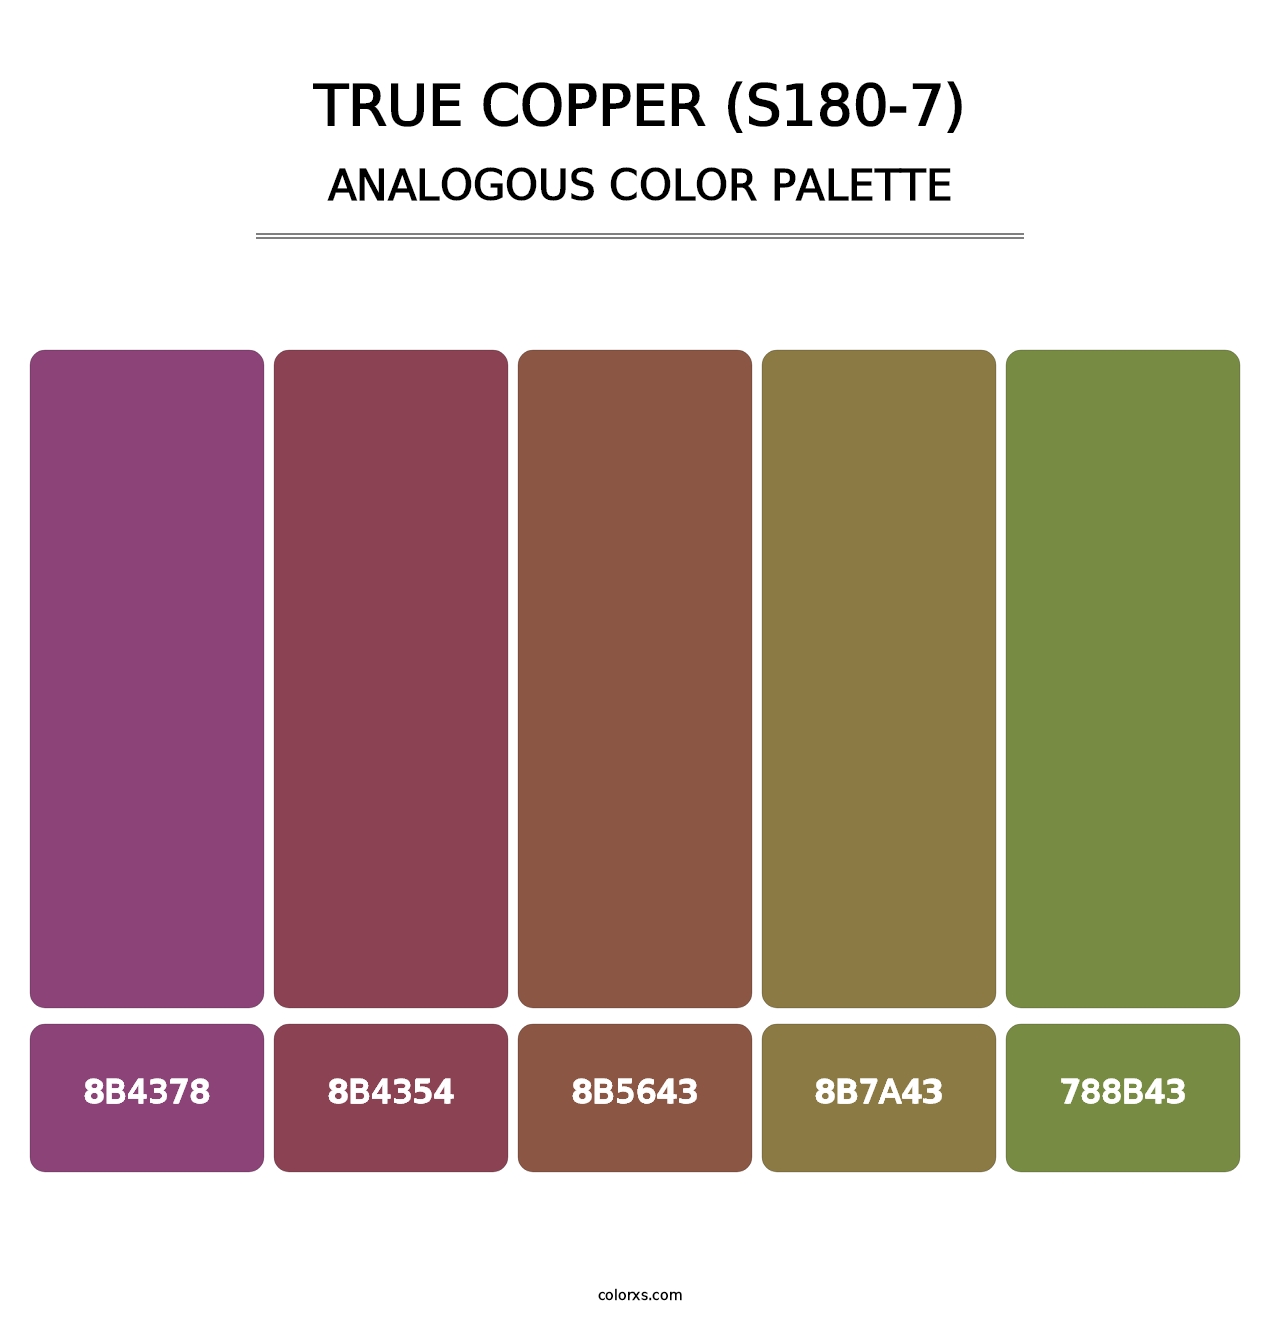 True Copper (S180-7) - Analogous Color Palette